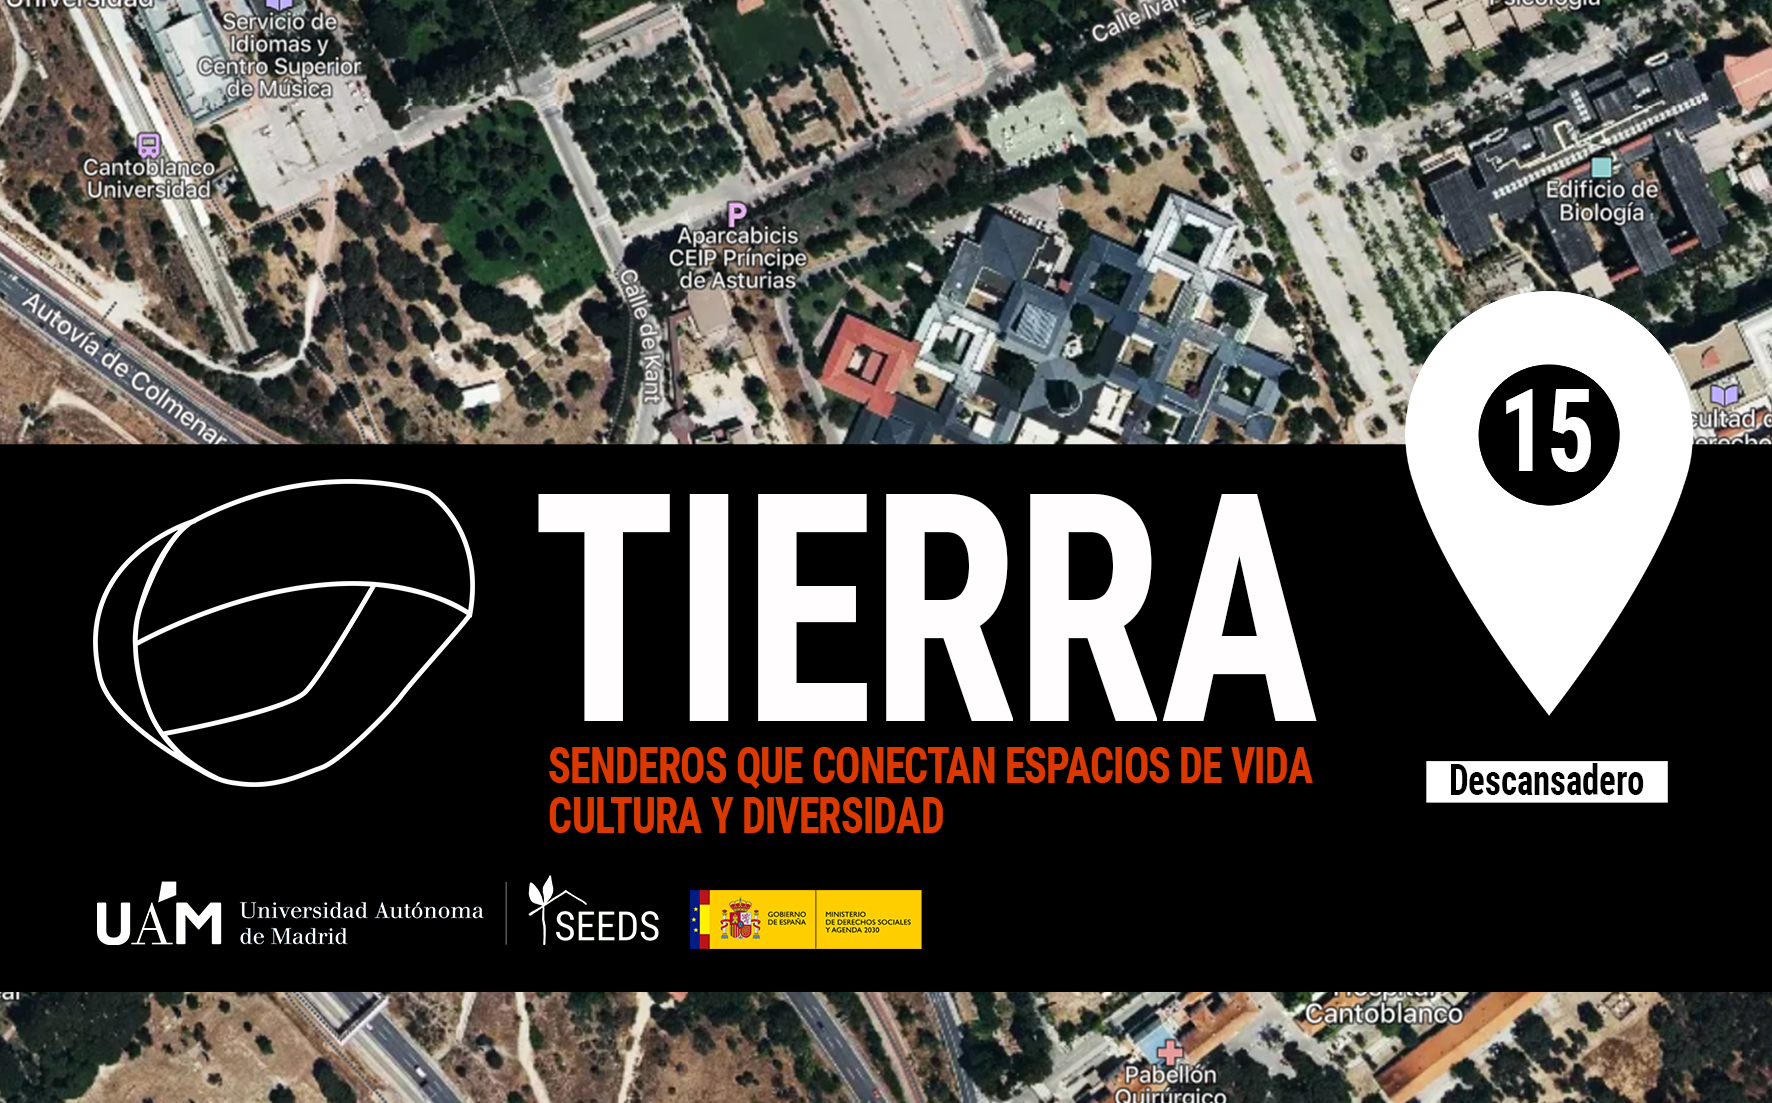 TIERRA: Descansadero 15_Senderos que conectan vida cultura diversidad